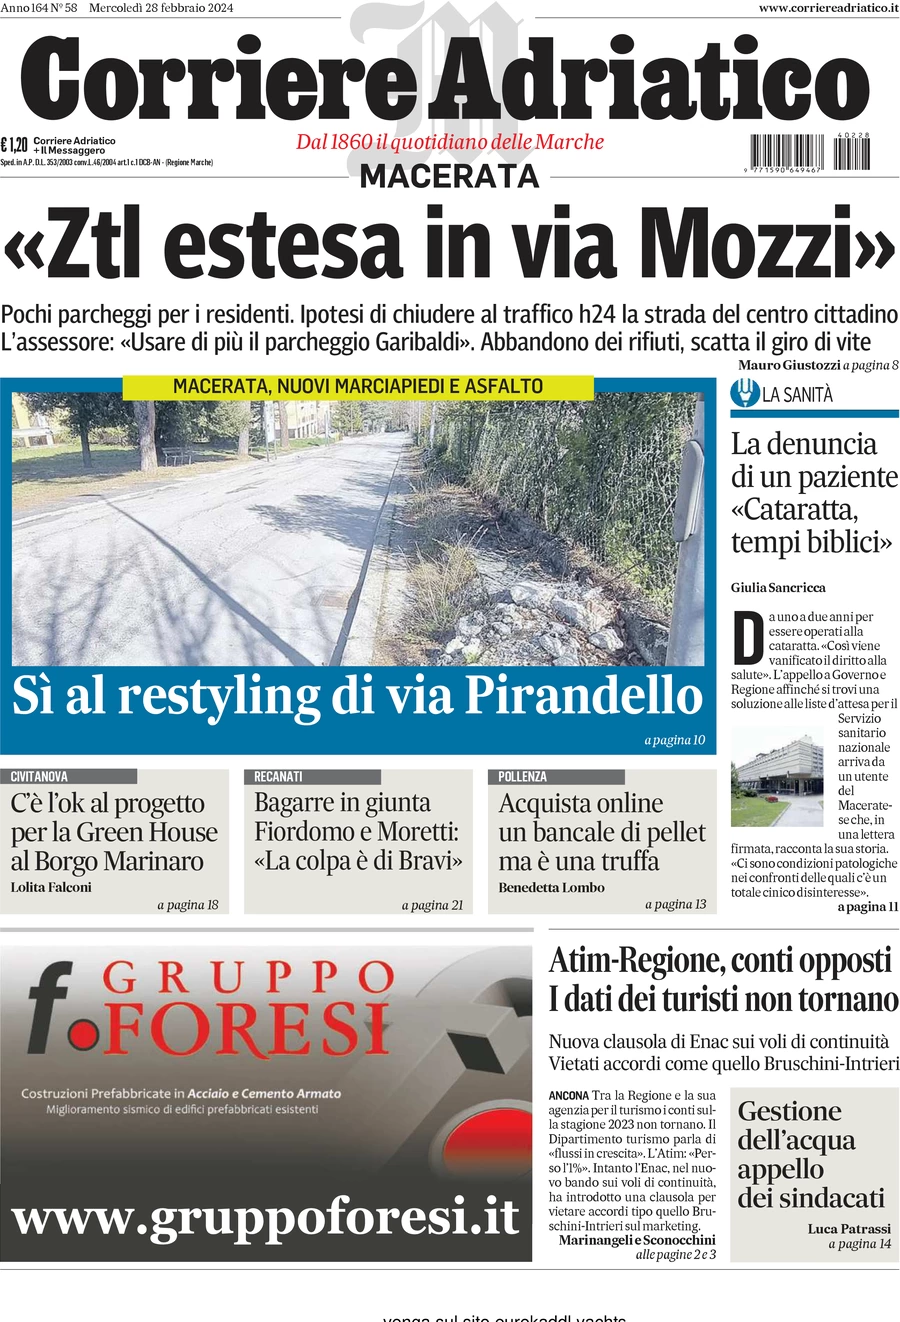 anteprima della prima pagina di corriere-adriatico-macerata del 28/02/2024